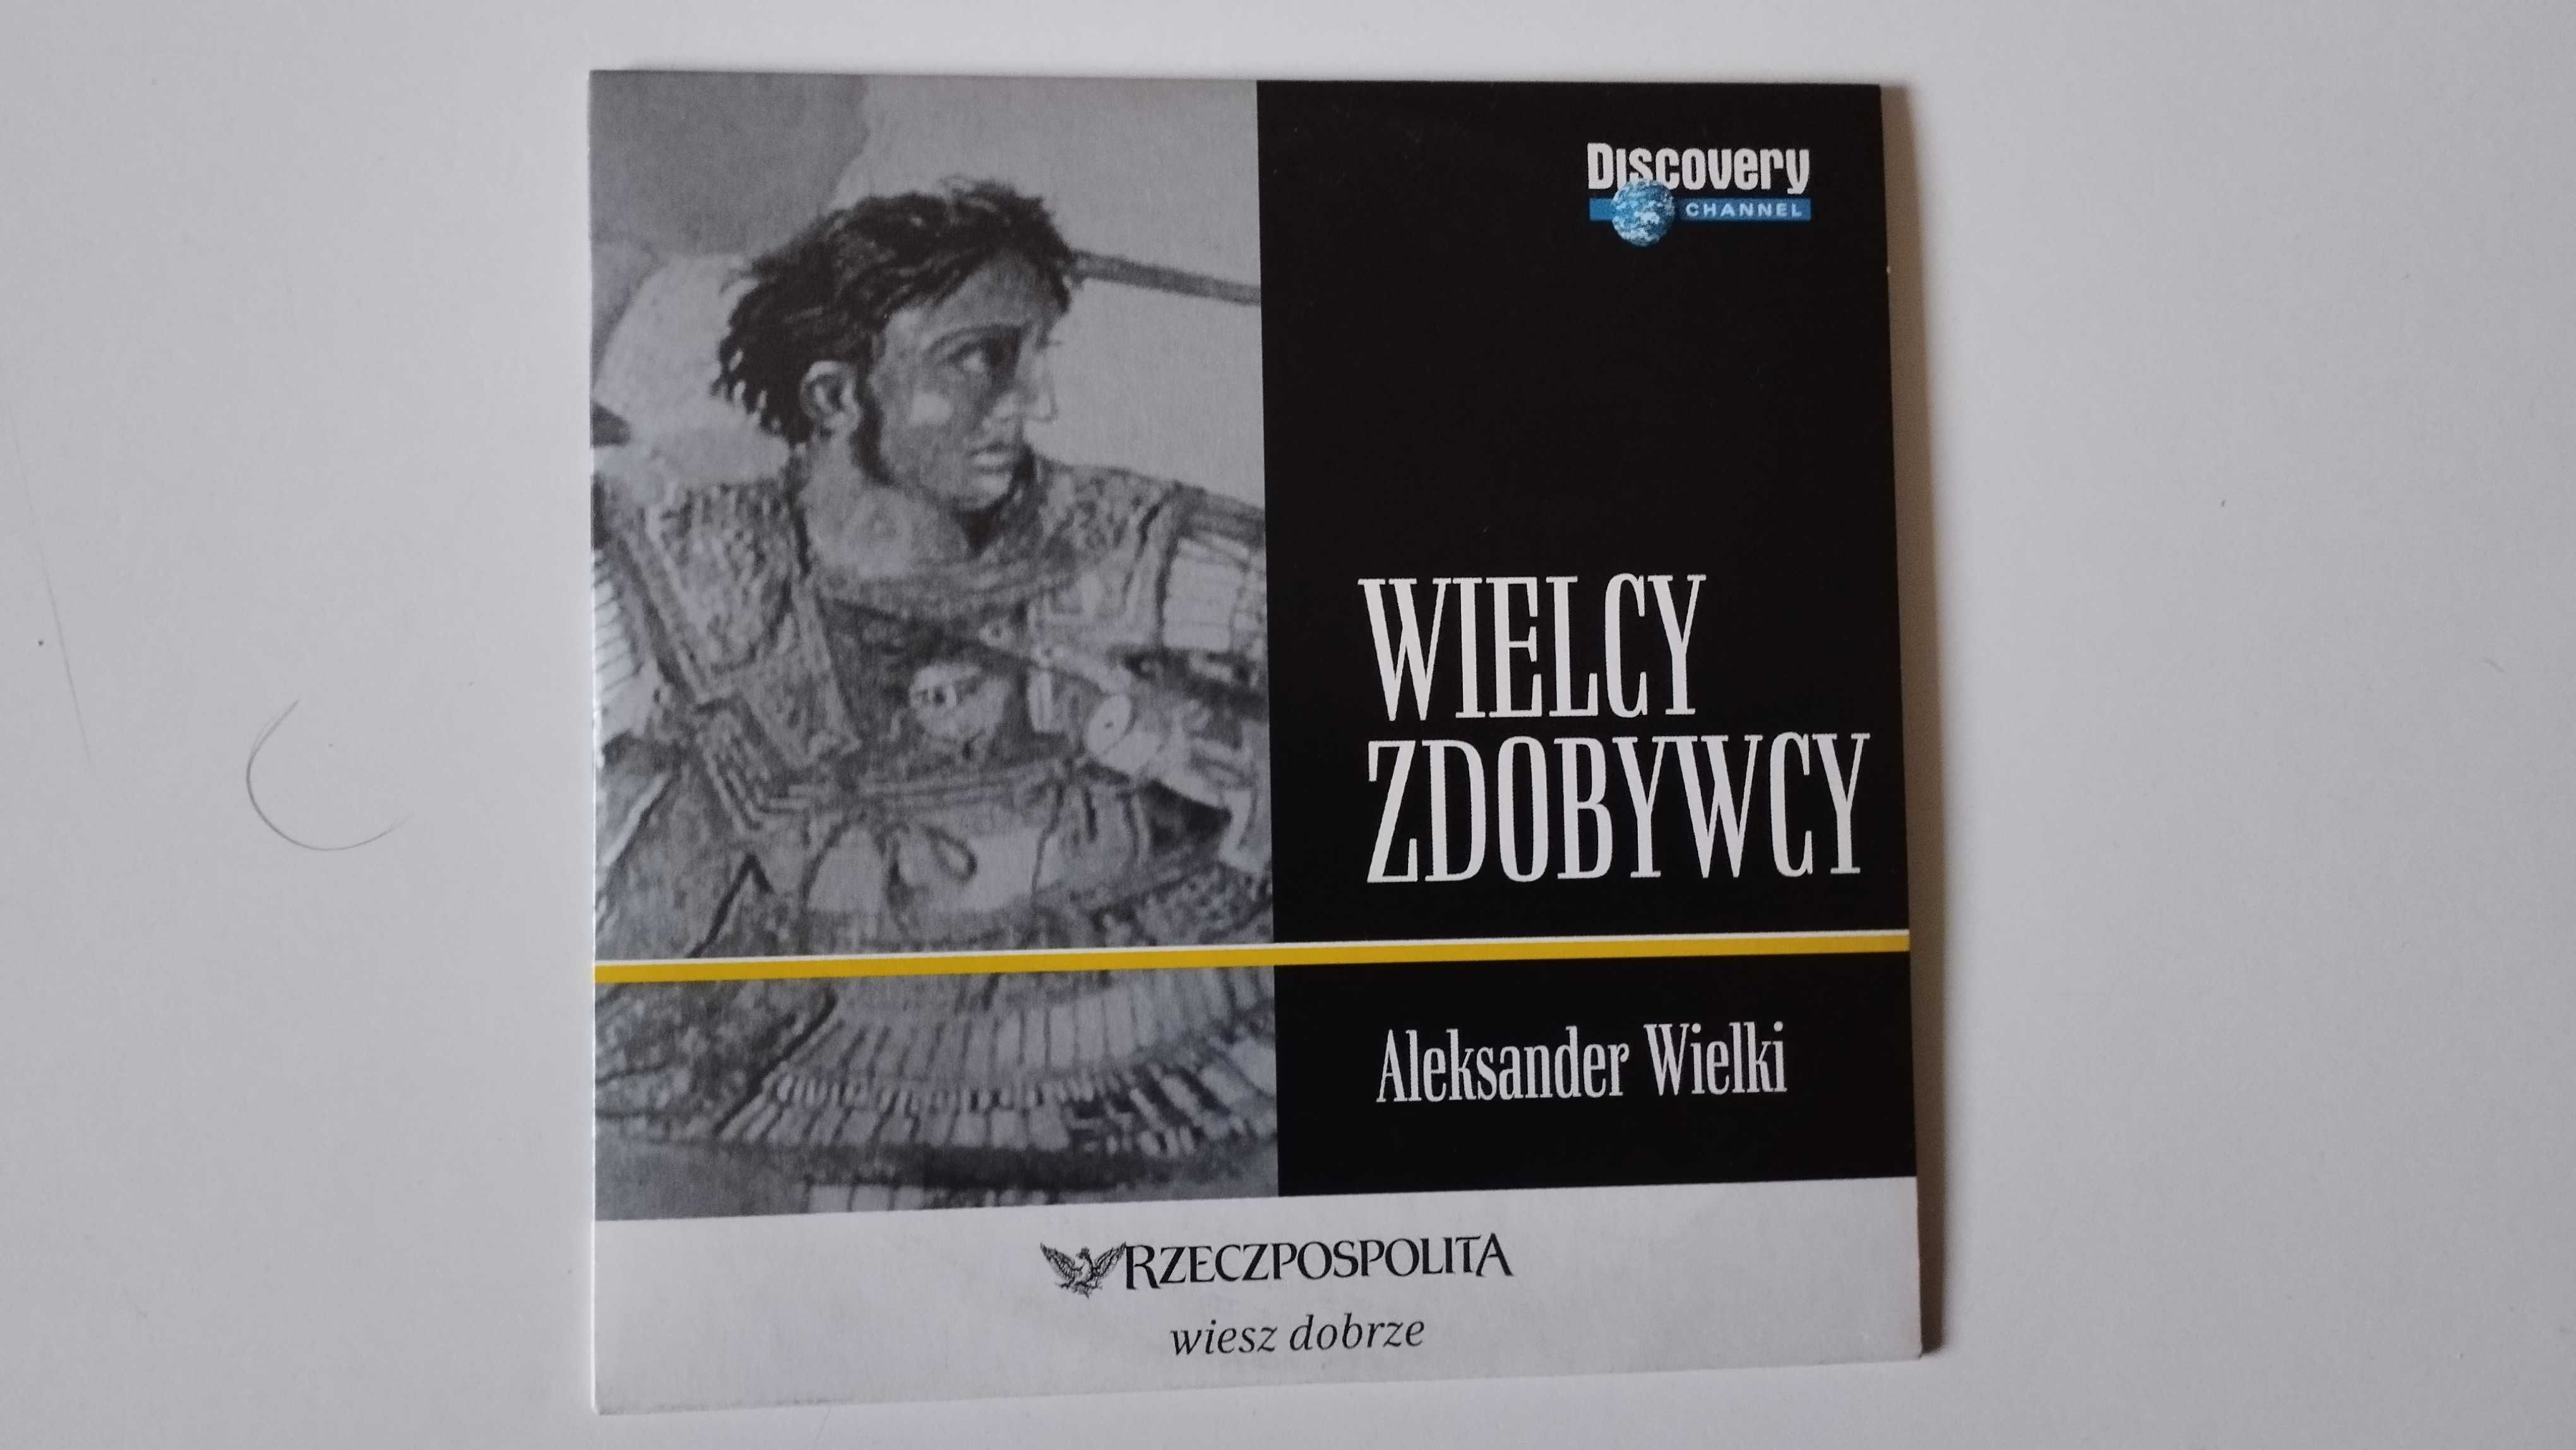 Wielcy odkrywcy, Śladami Polskich archeologów